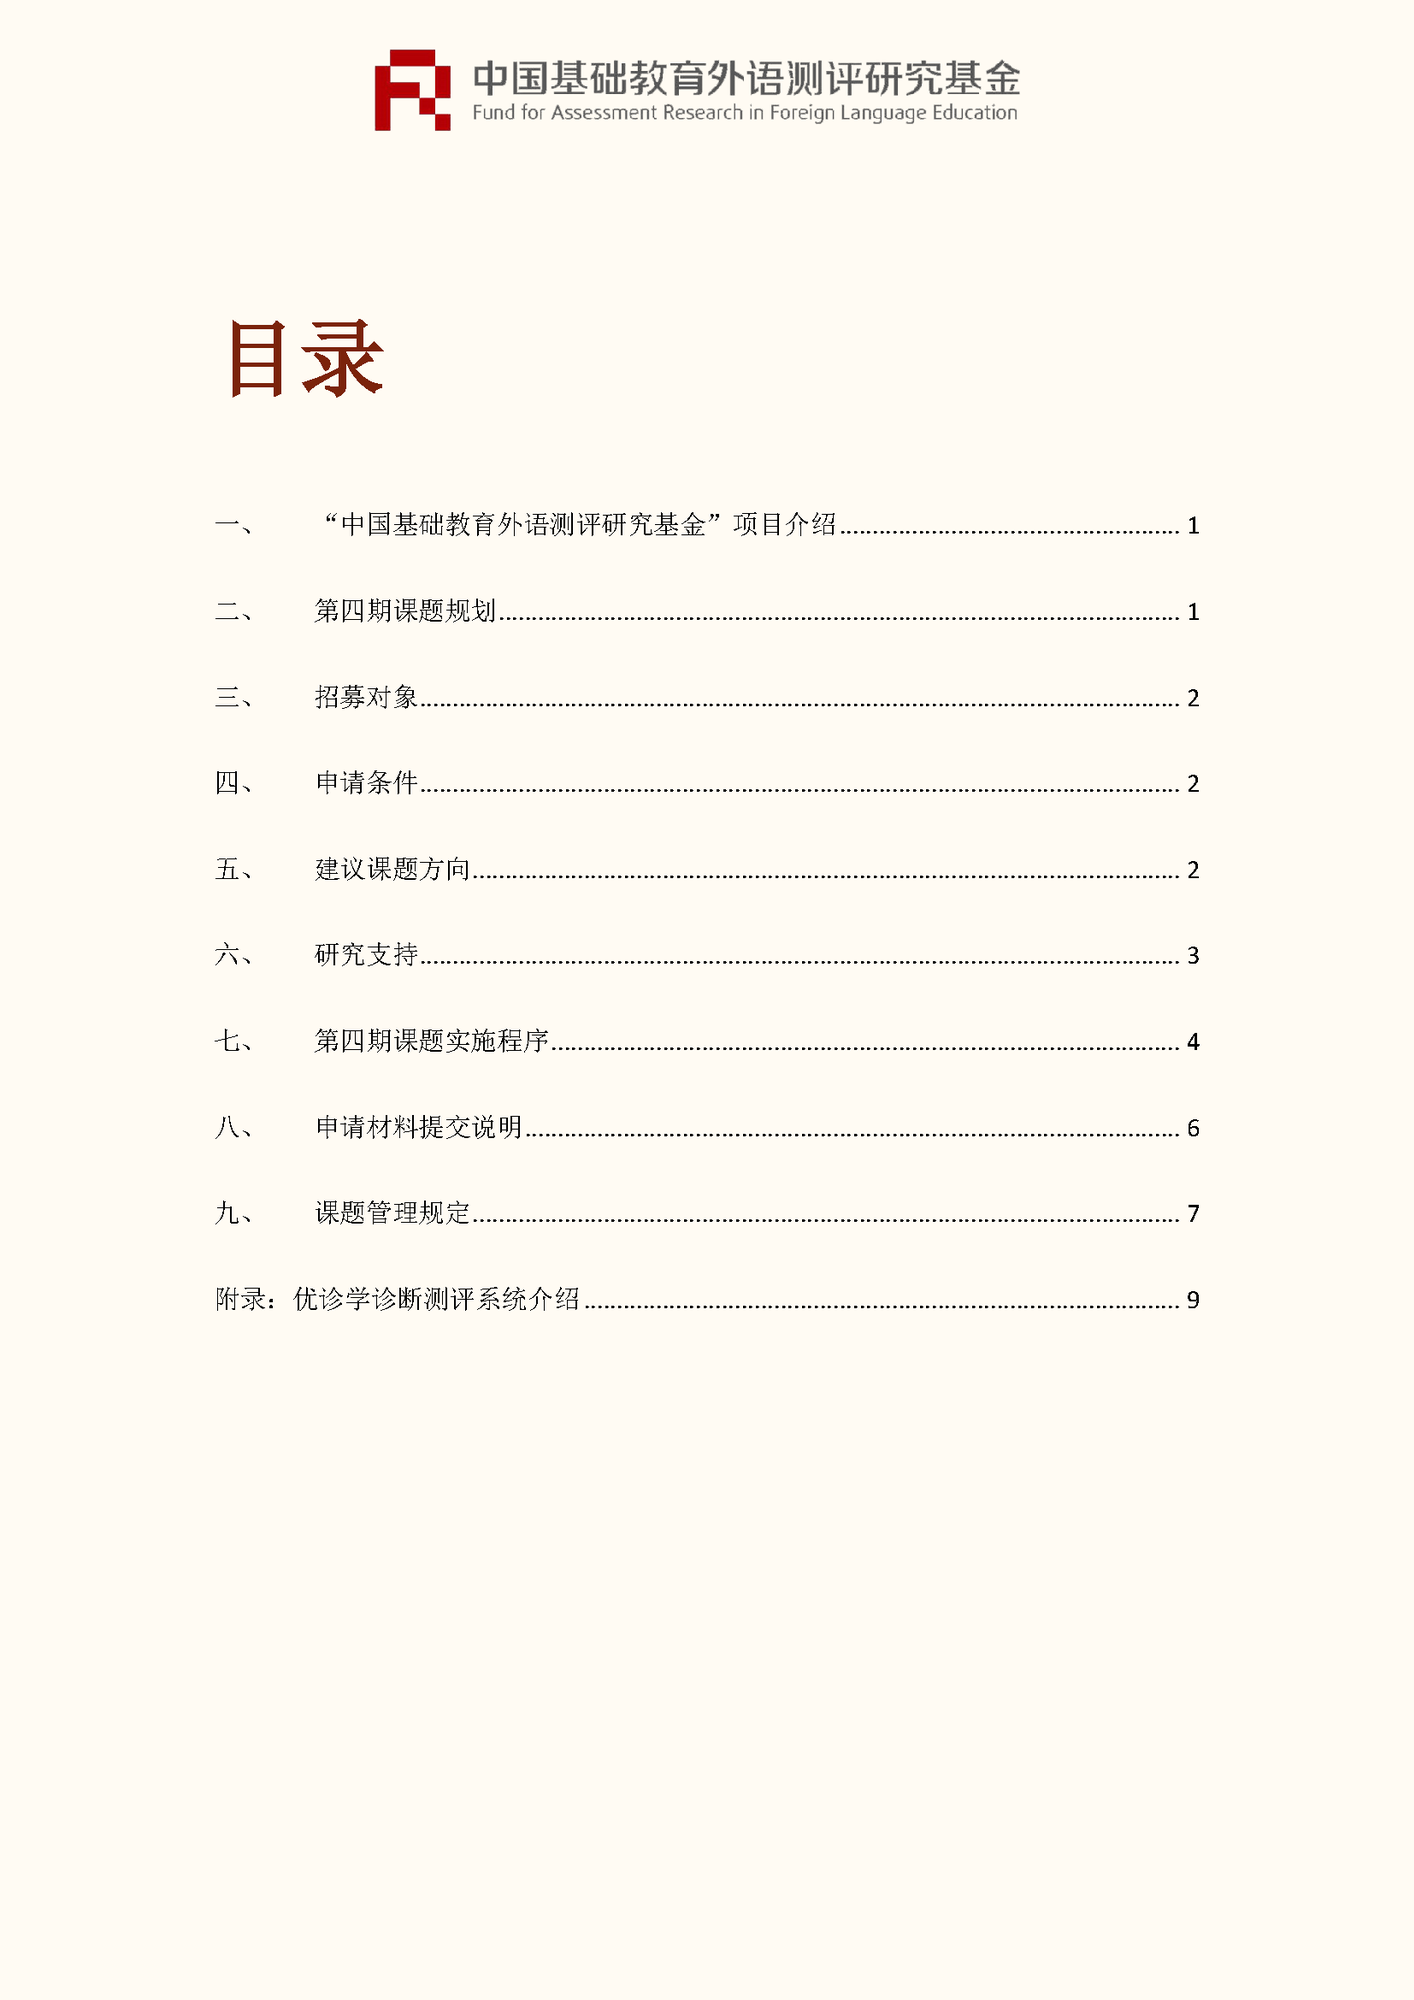 ”中国基础教育外语测评研究基金“项目第四期课题申报指南_页面_02